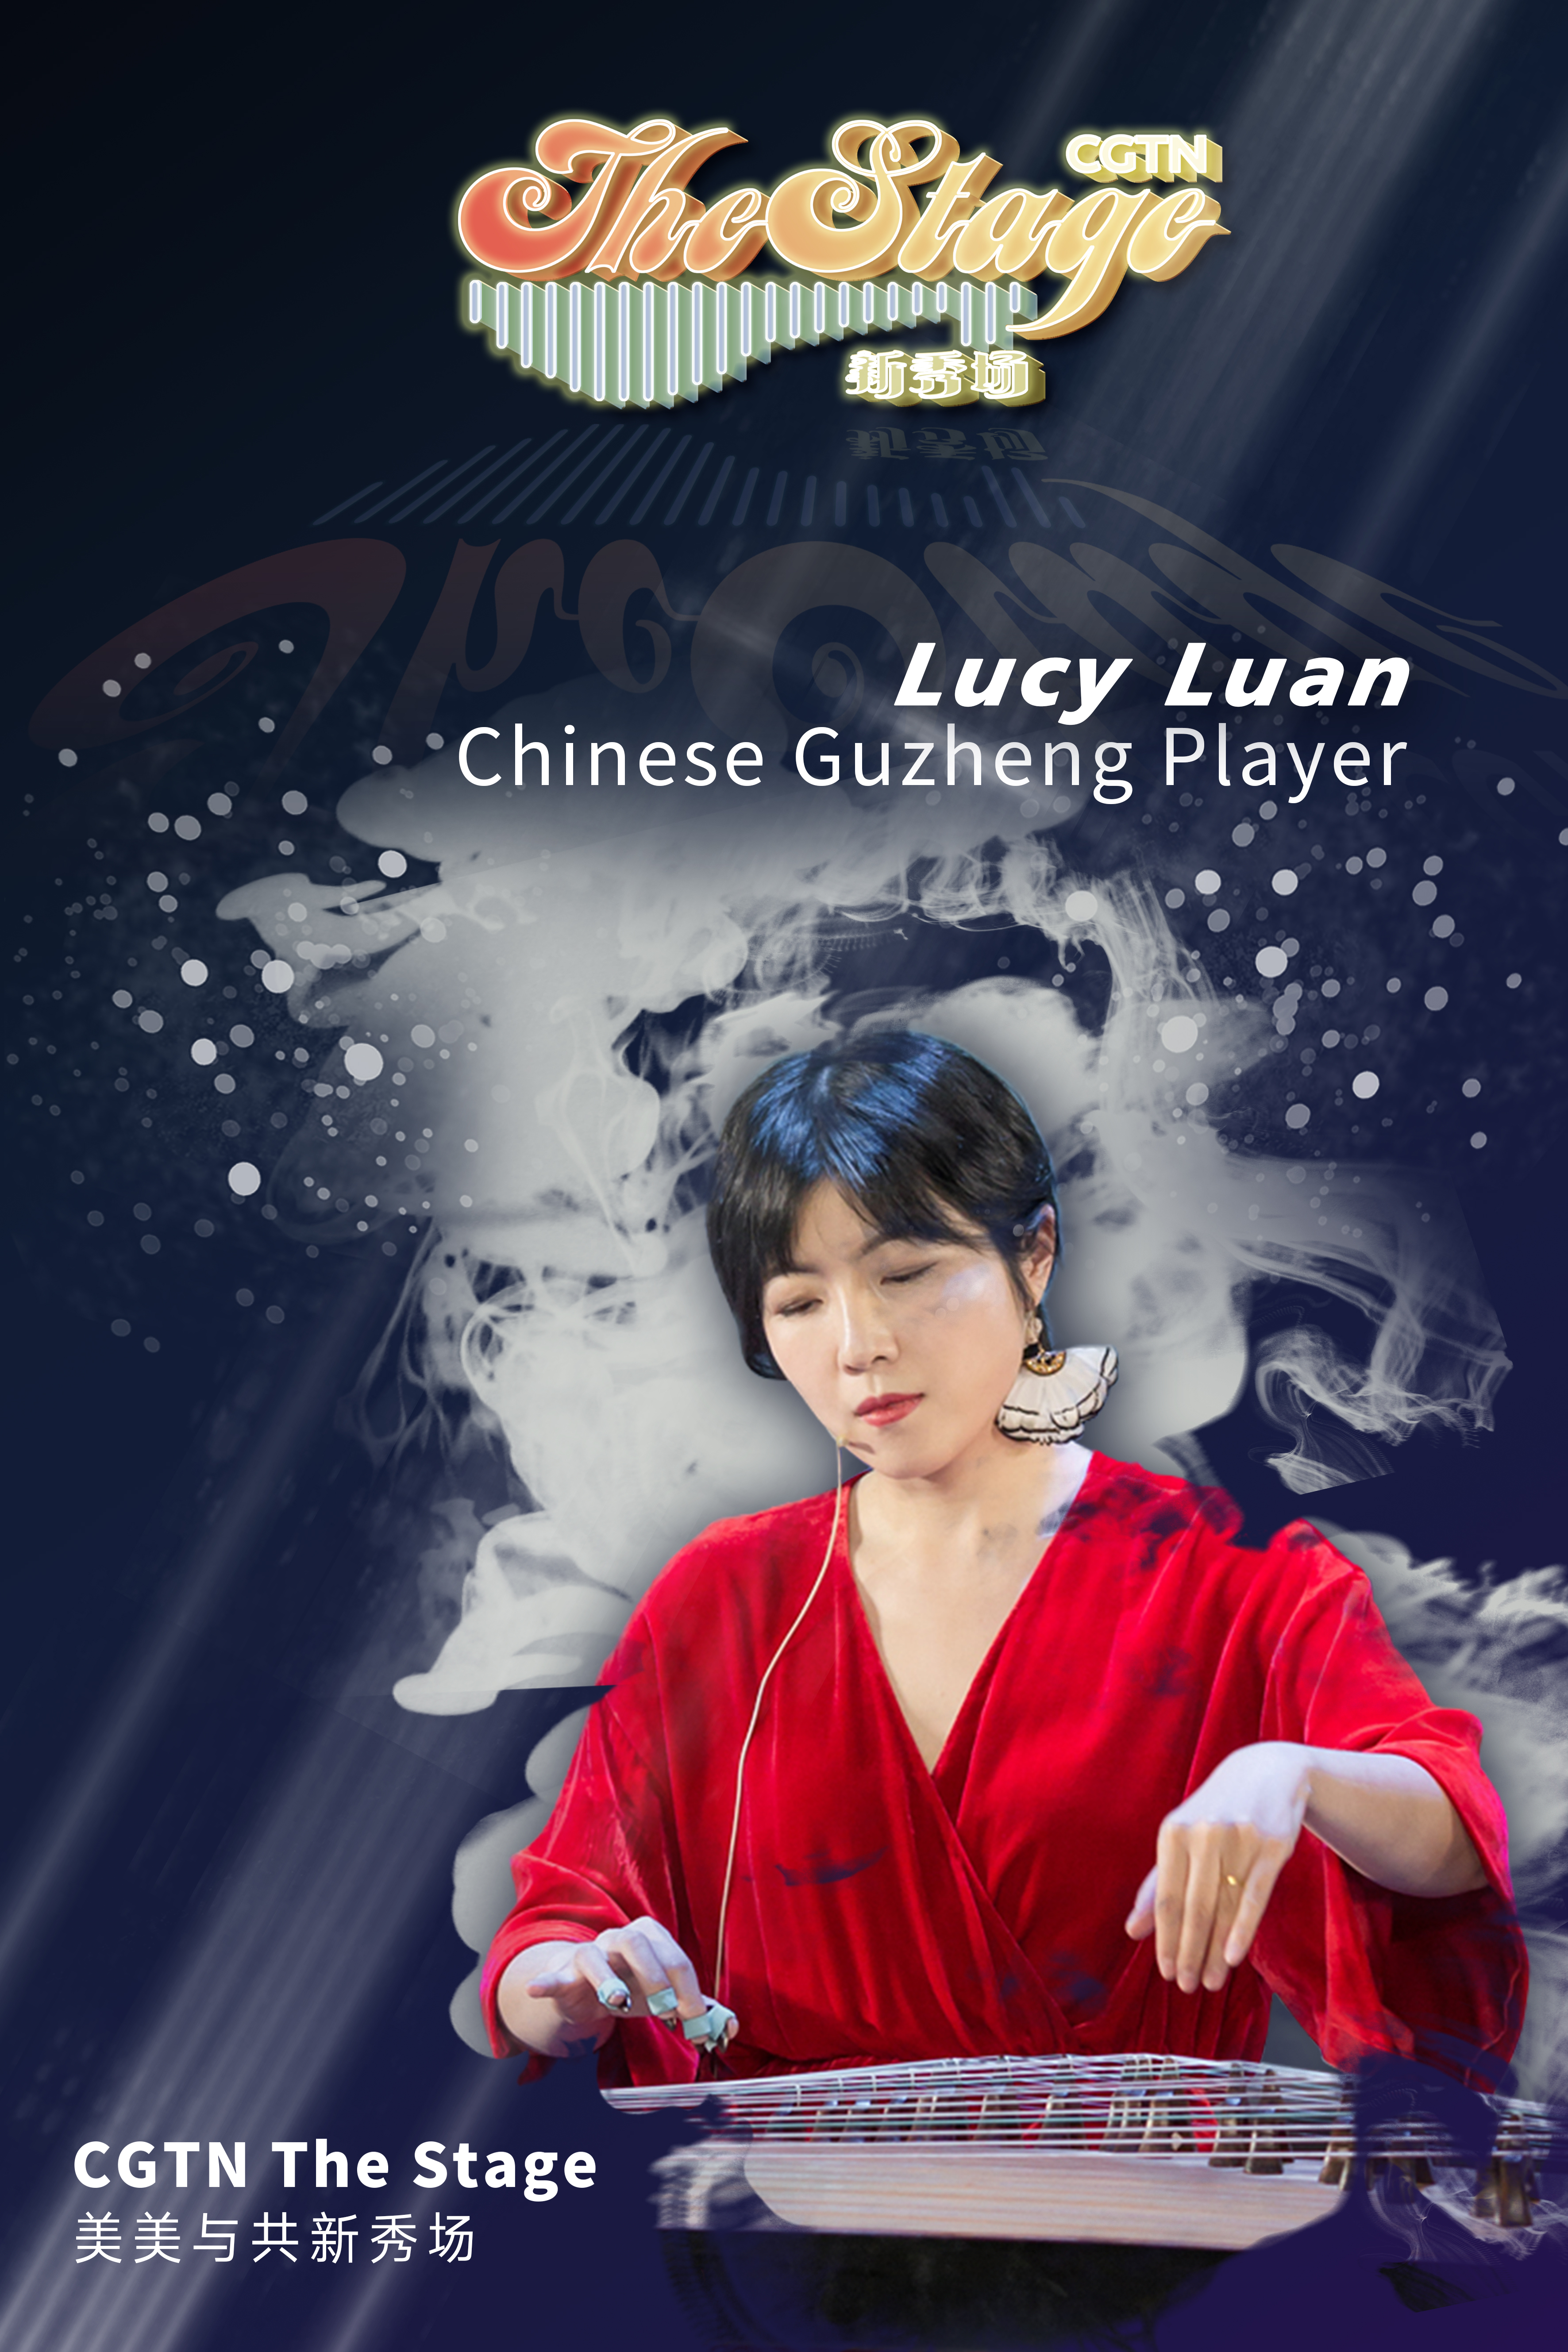 Guzheng artist Lucy Luan